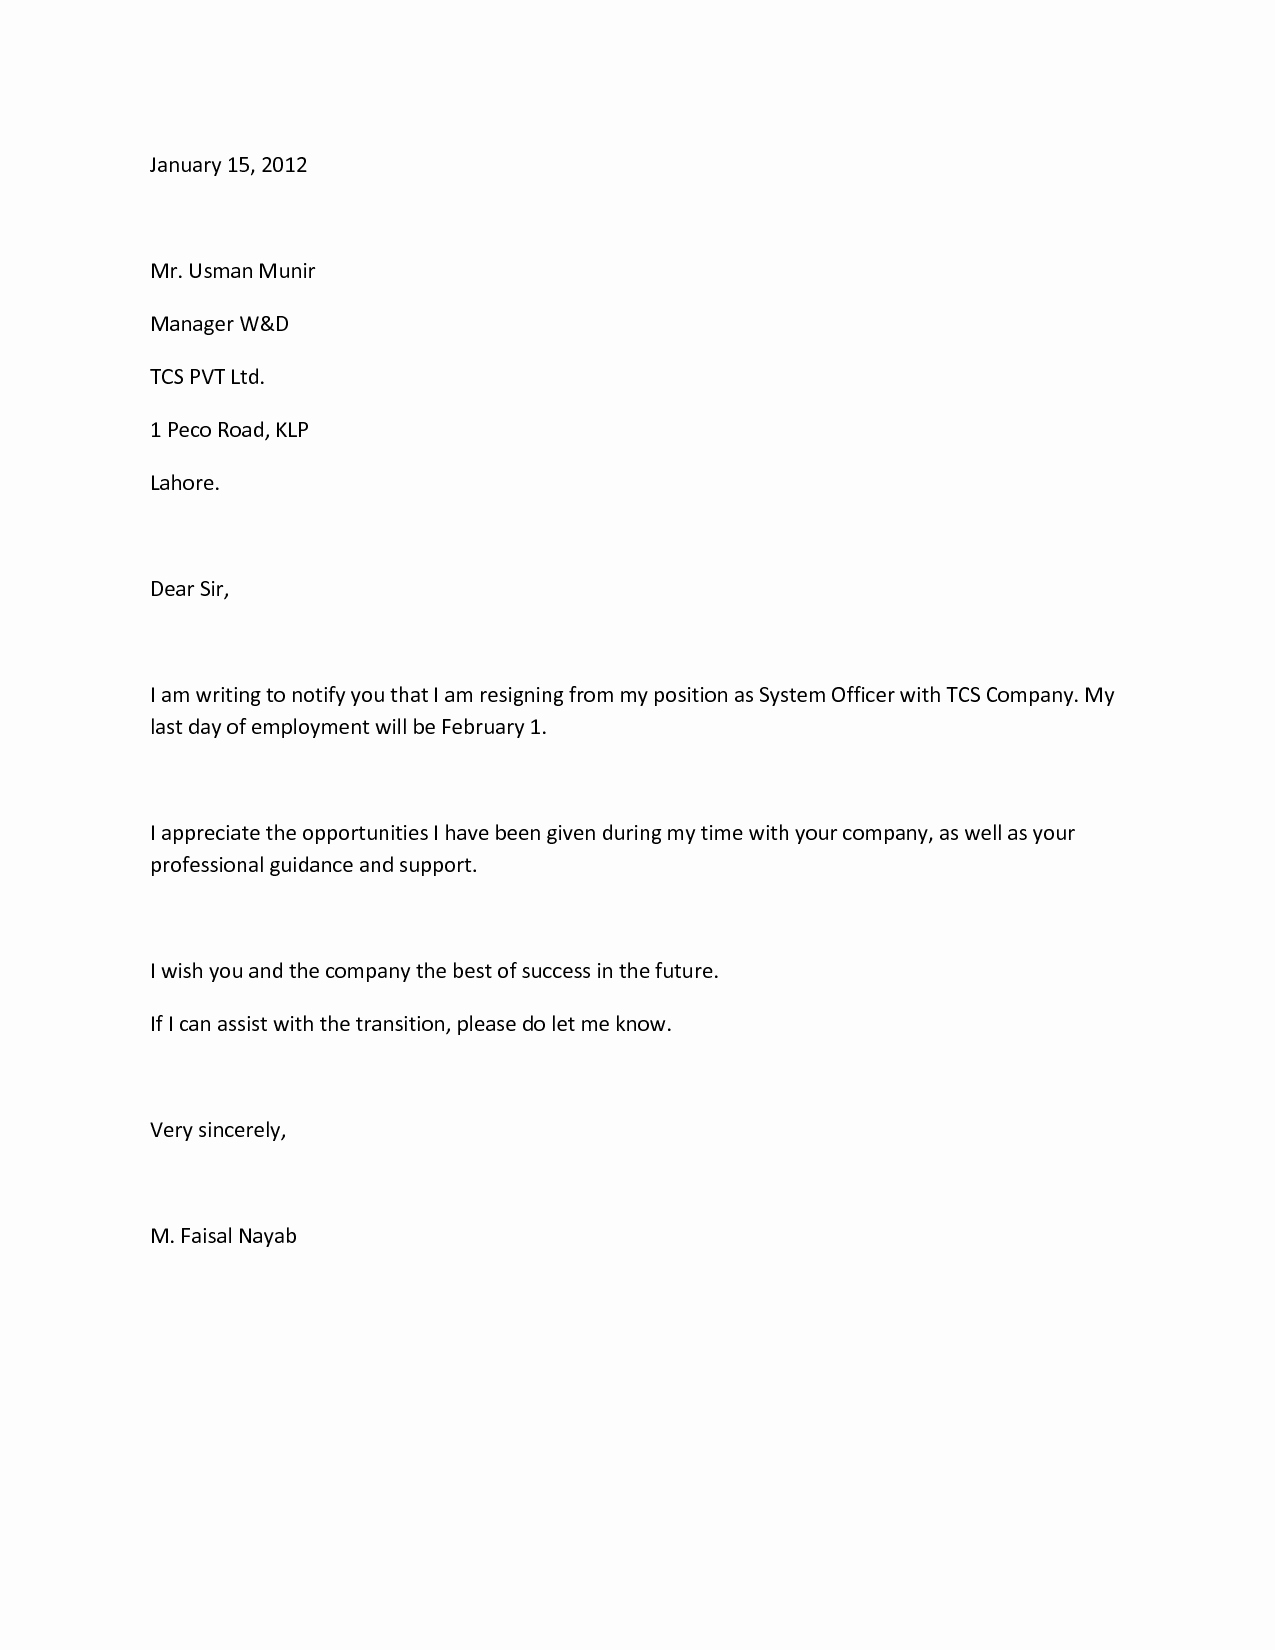 Resignation Letter for Work Elegant How to Write A Resignation Letter